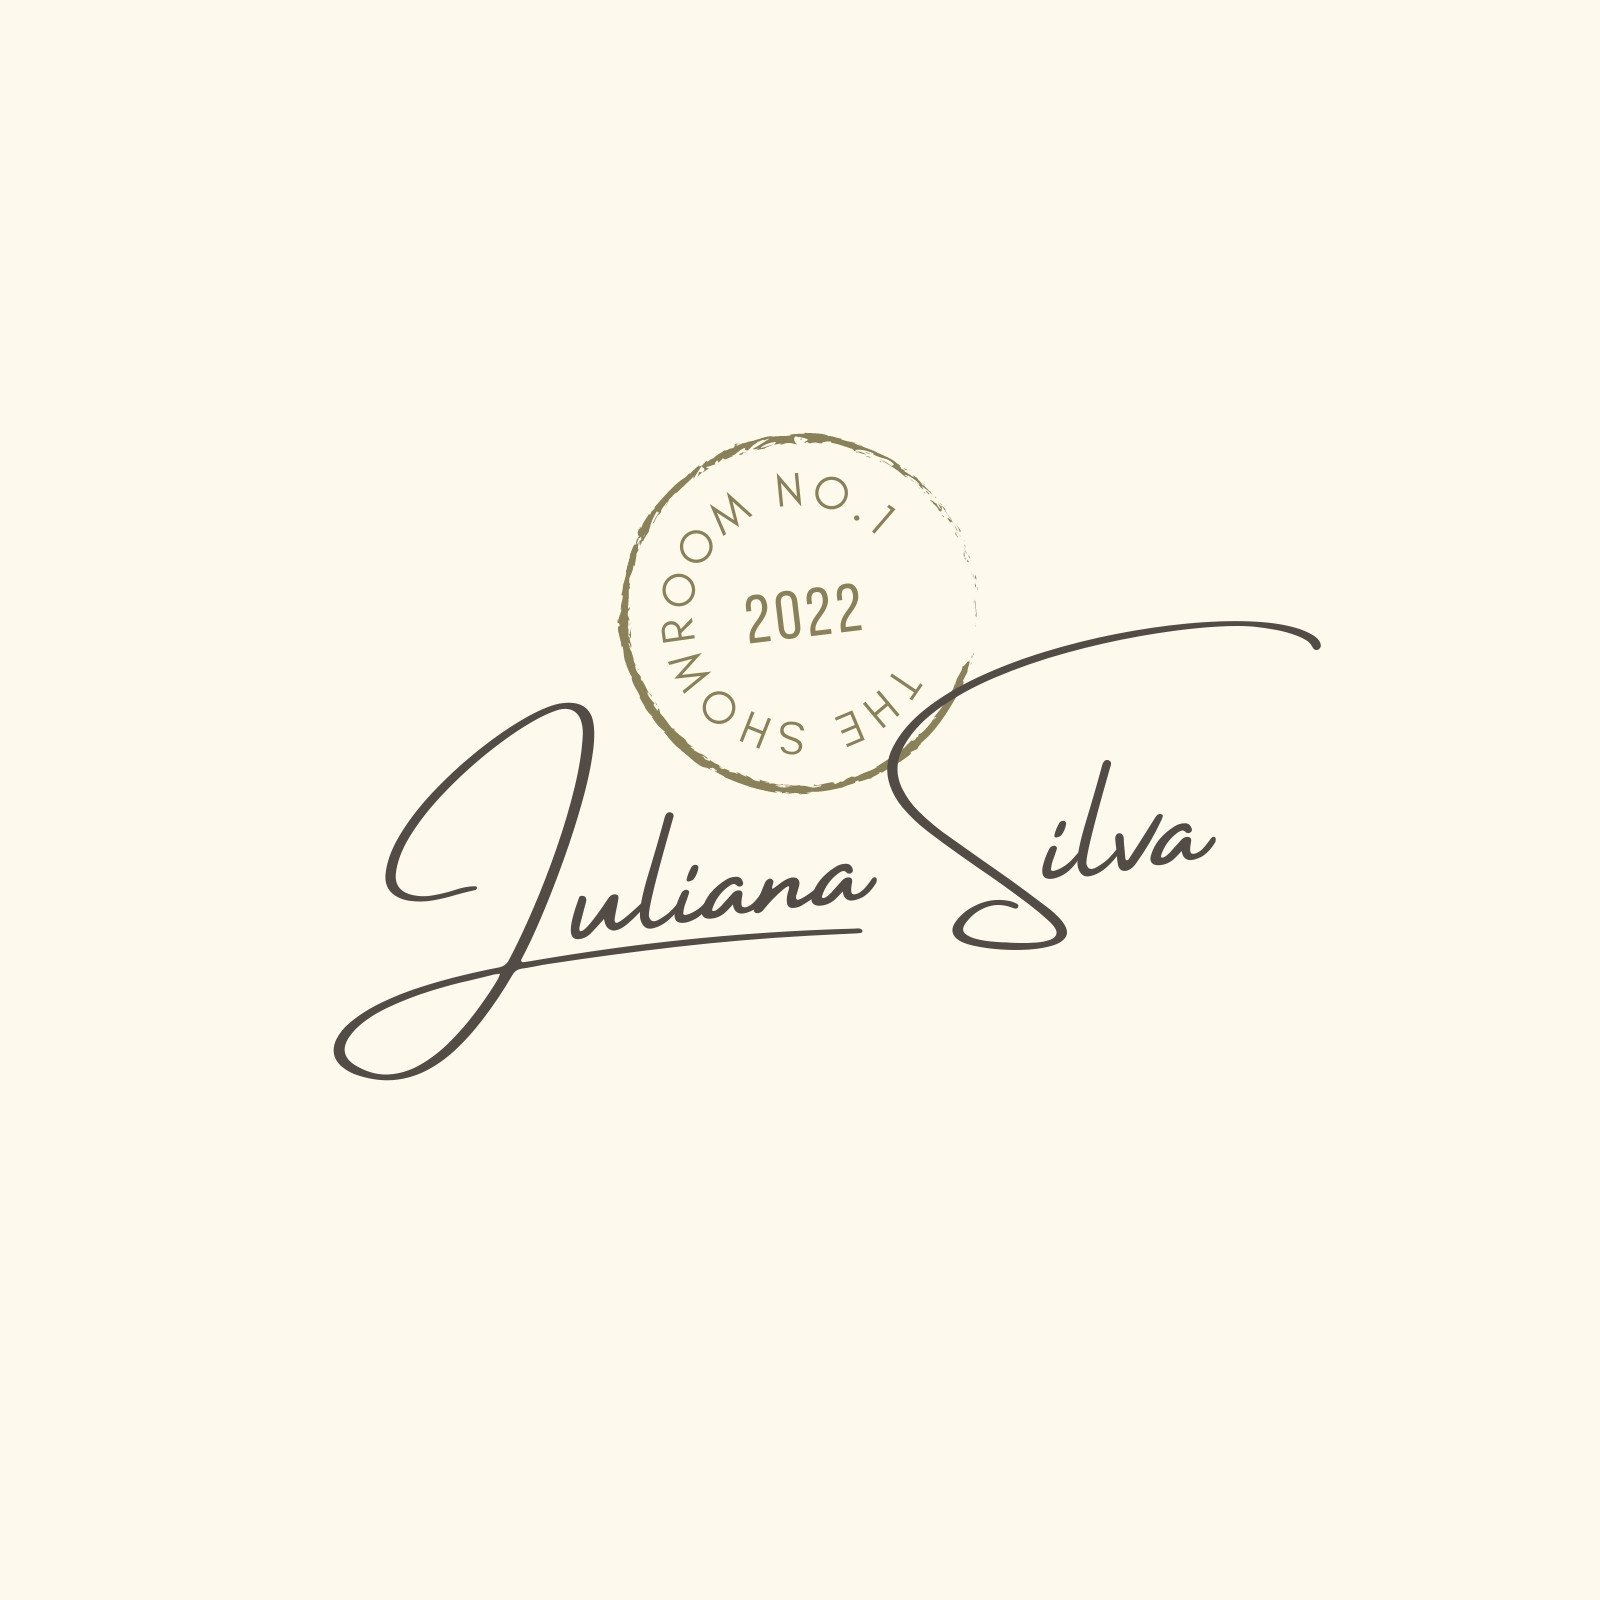 Custom Teacher Signature Stamp / Personalized Signature Name Stamp